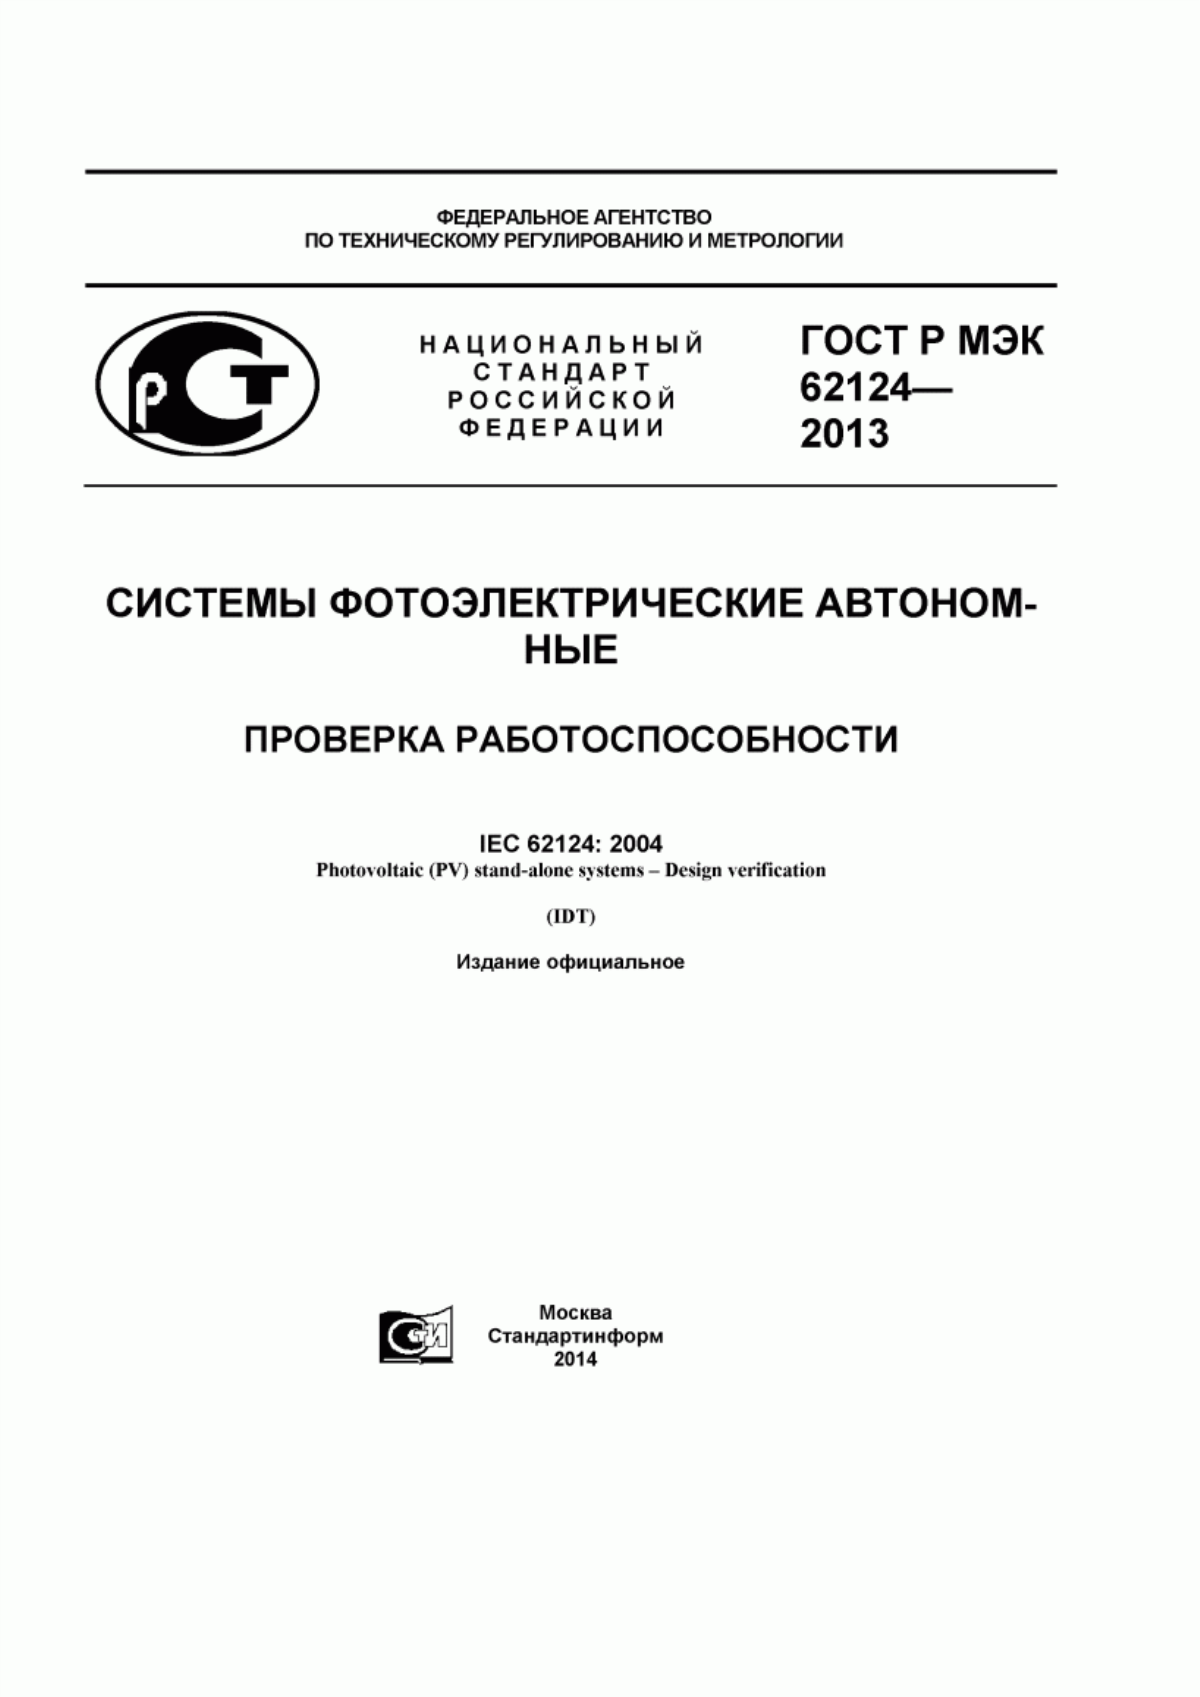 ГОСТ Р МЭК 62124-2013 Системы фотоэлектрические автономные. Проверка работоспособности